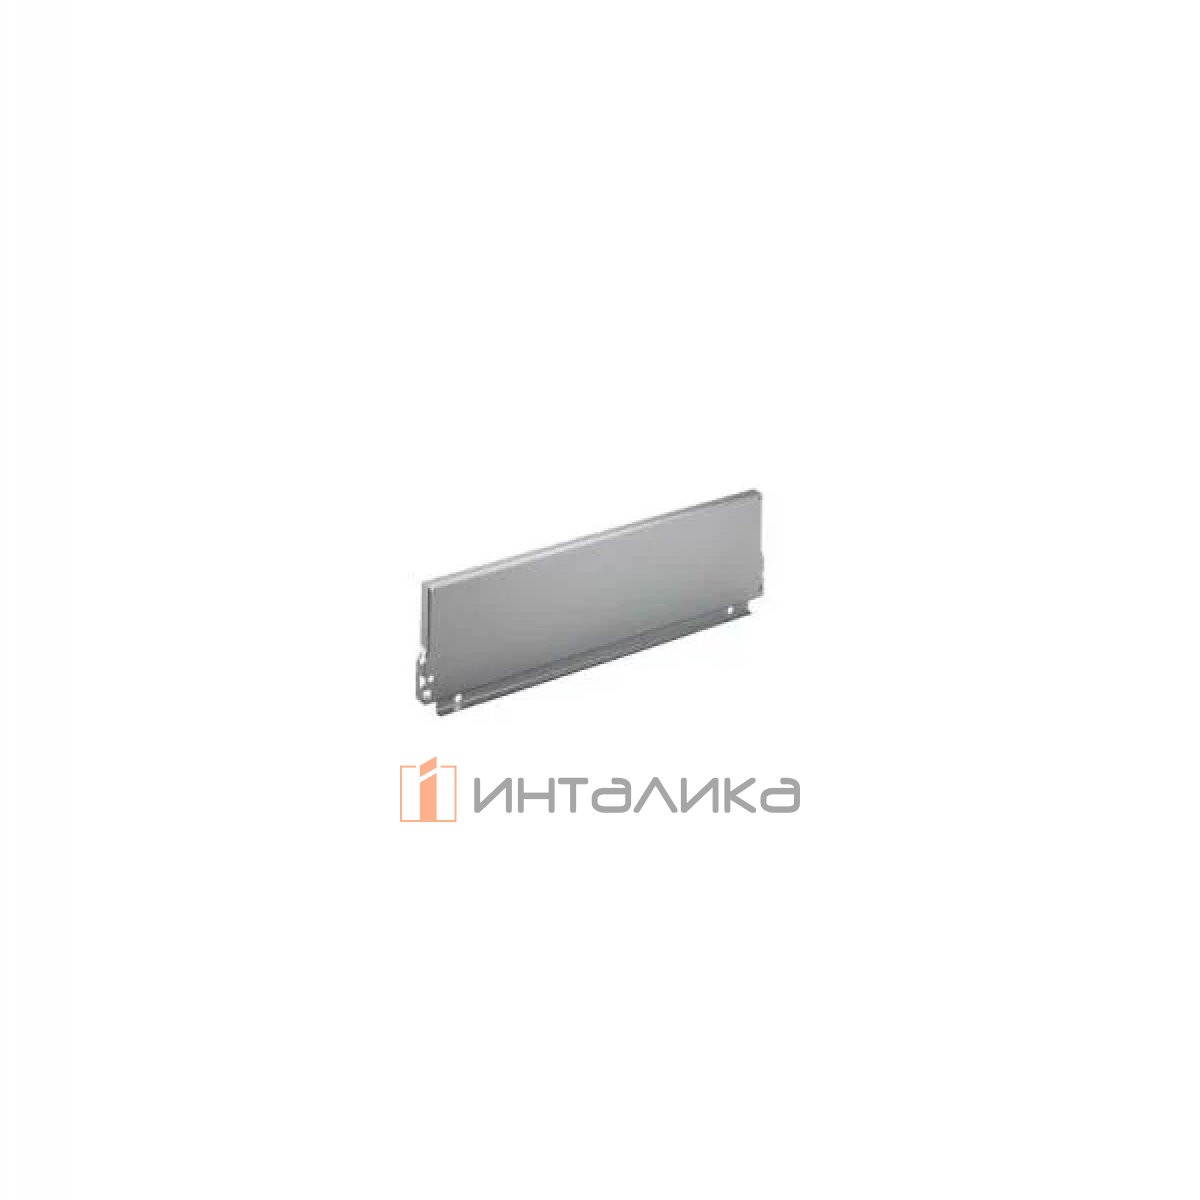 Задняя стенка HETTICH InnoTech/InnoTech Atira, высота 144мм, H450 мм, сталь, цвет серебристый, (V20)